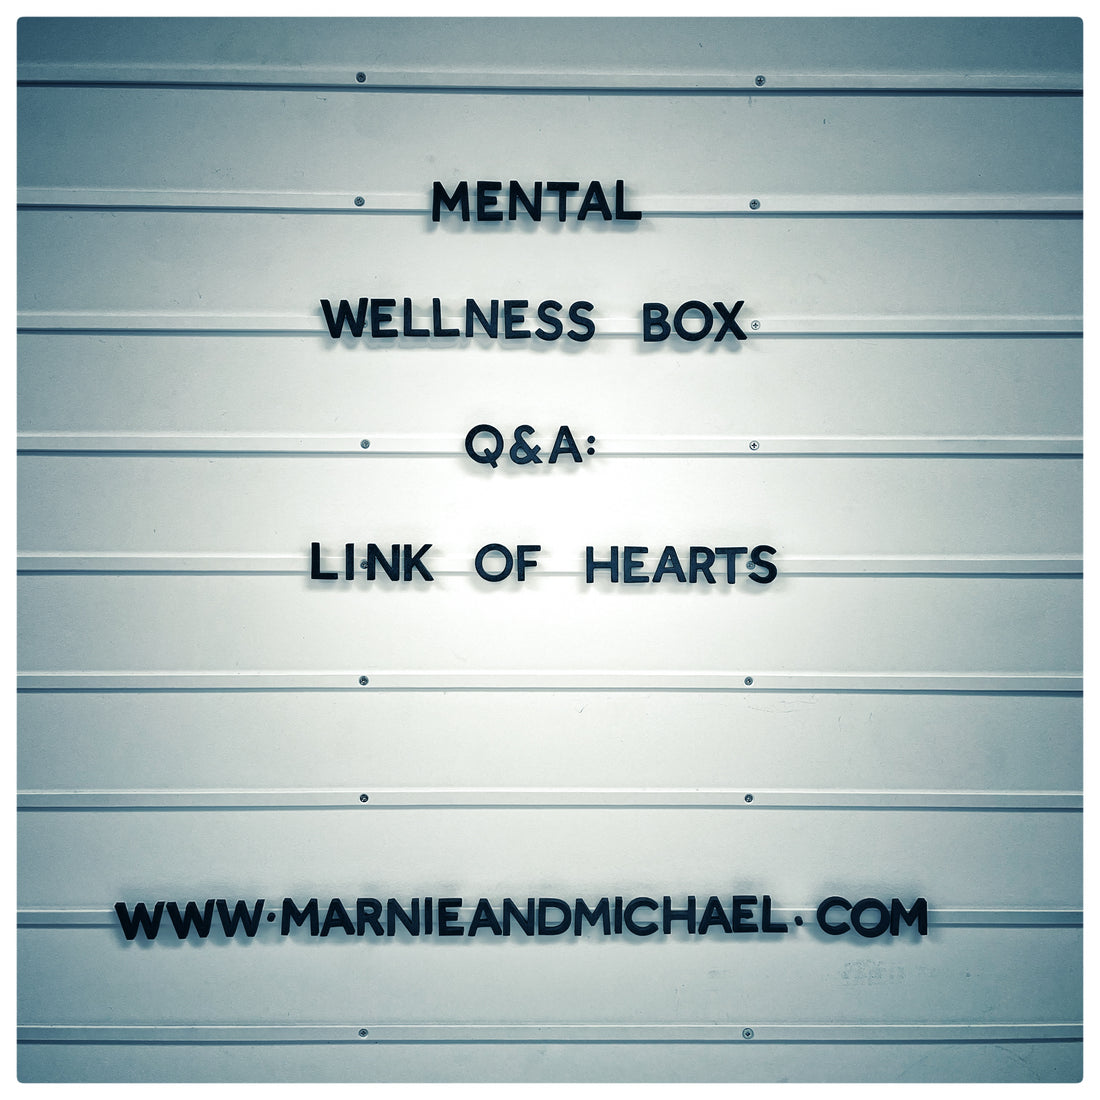 MENTAL WELLNESS BOX 'Q&A':  LINK OF HEARTS